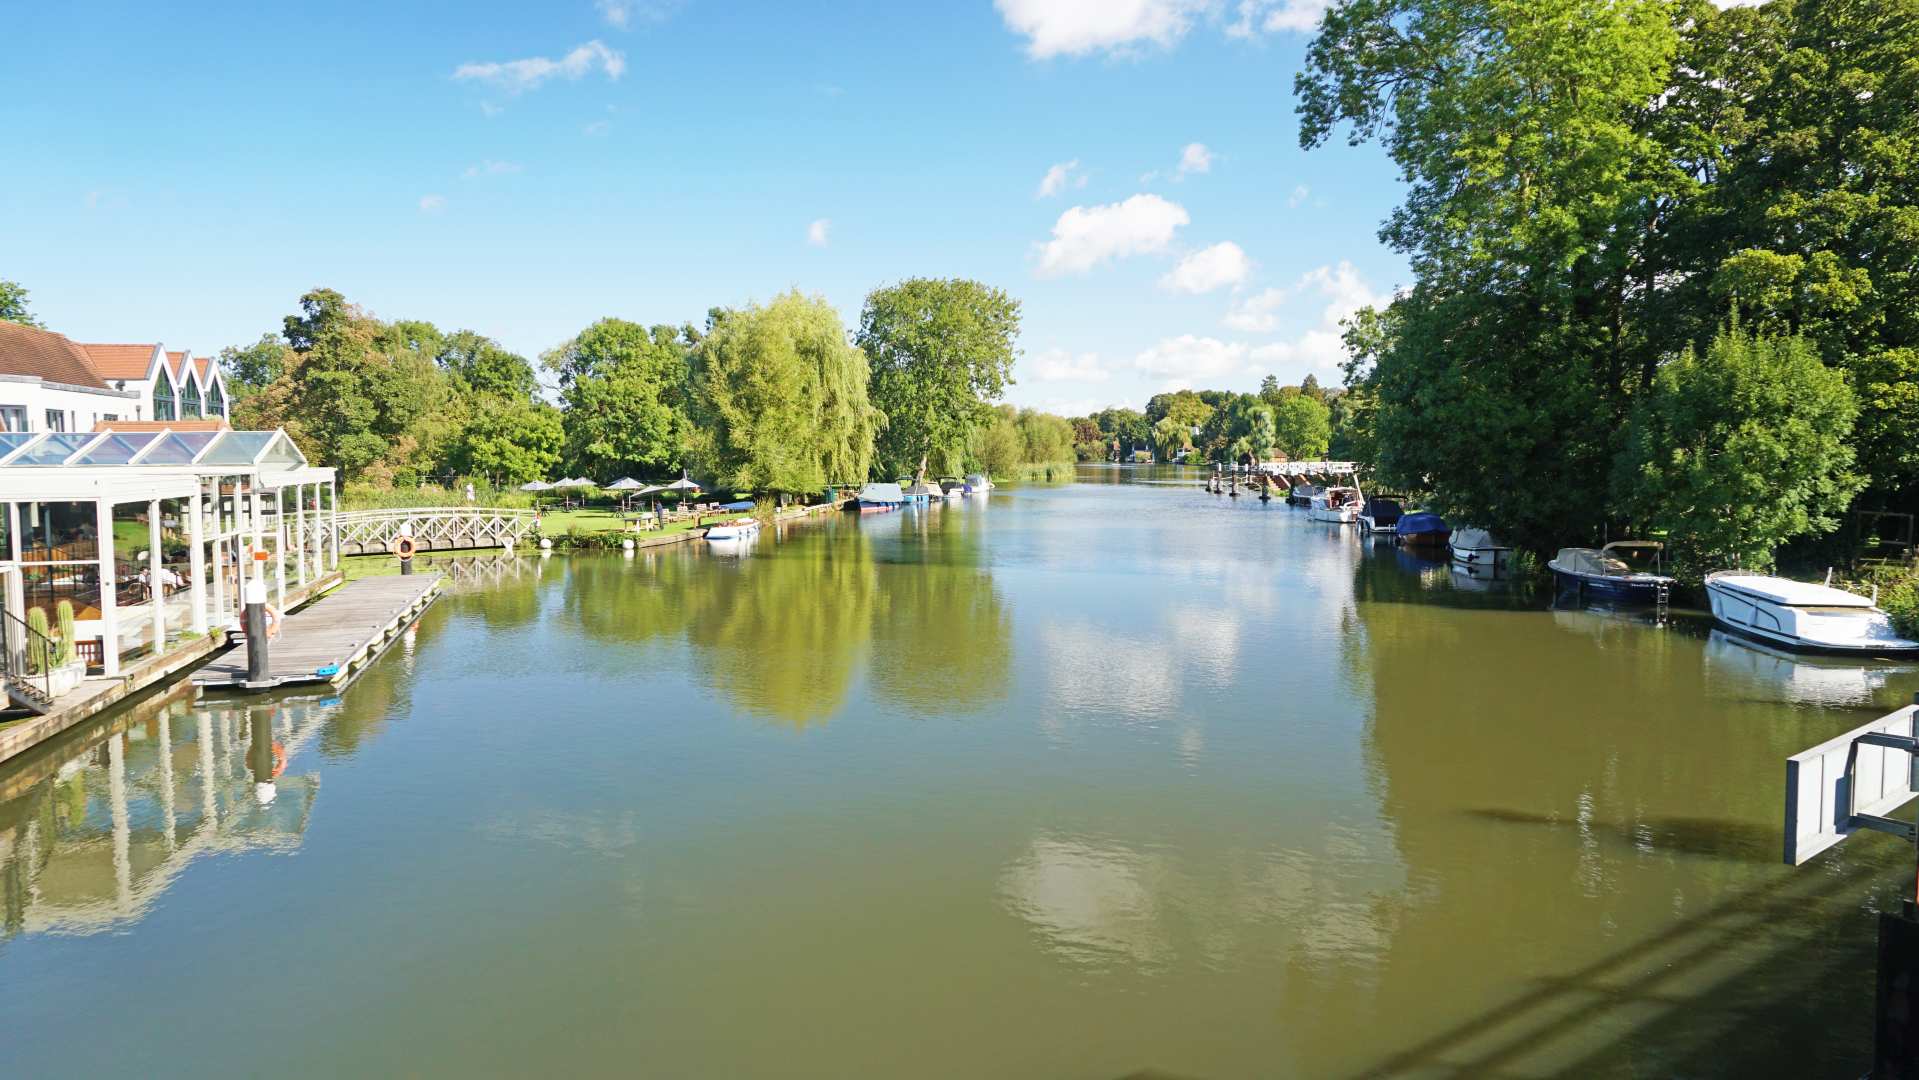 View of River Thames - View of River Thames